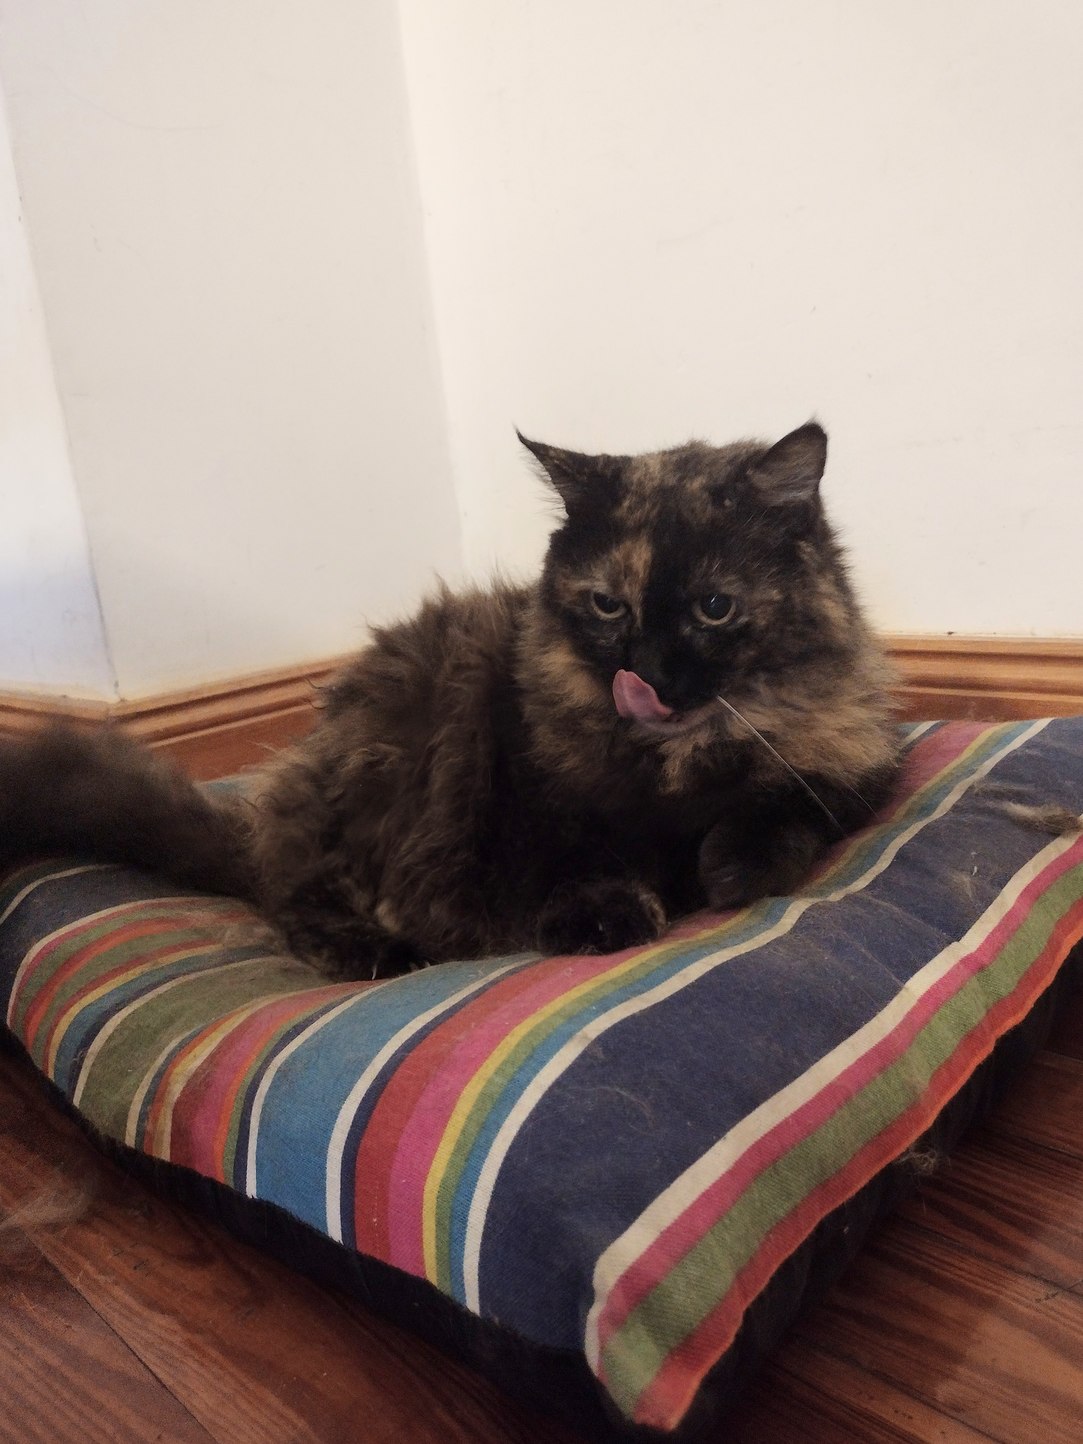 Gato reveal PD: pesa 10 kilos, es hembra, raza tortoiseshell, castrada - meme